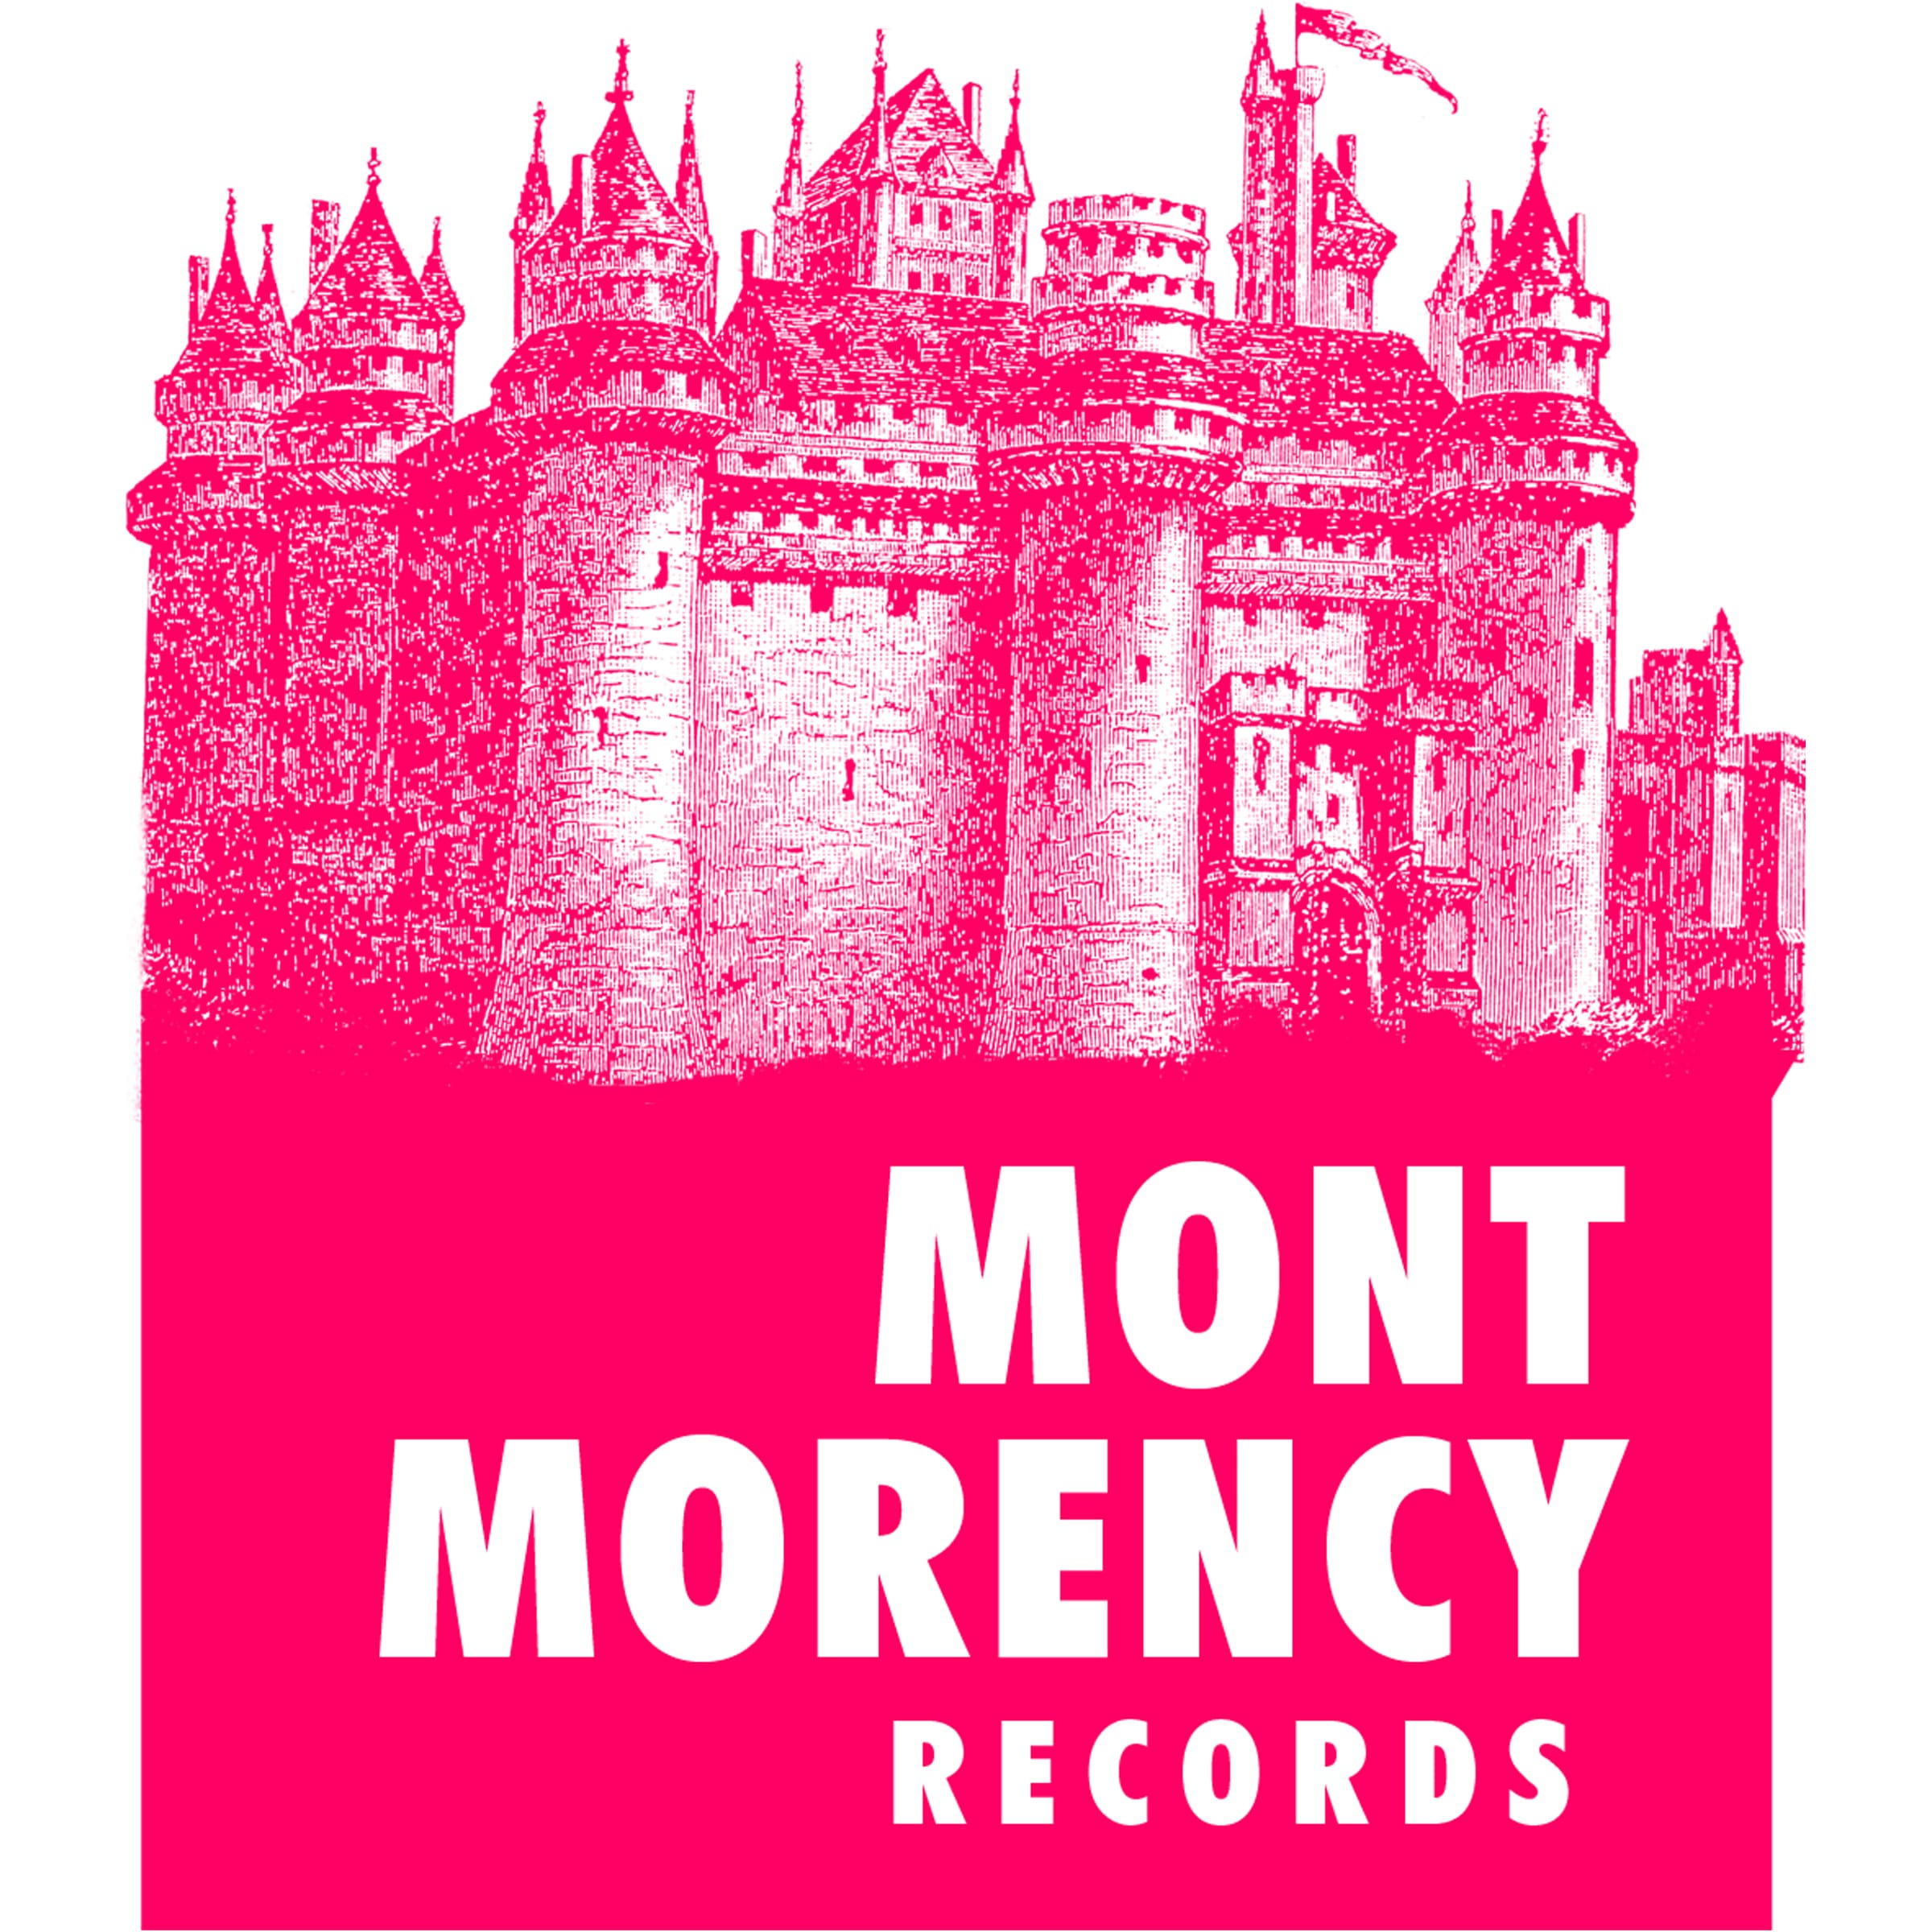 MONTMORENCY RECORDS